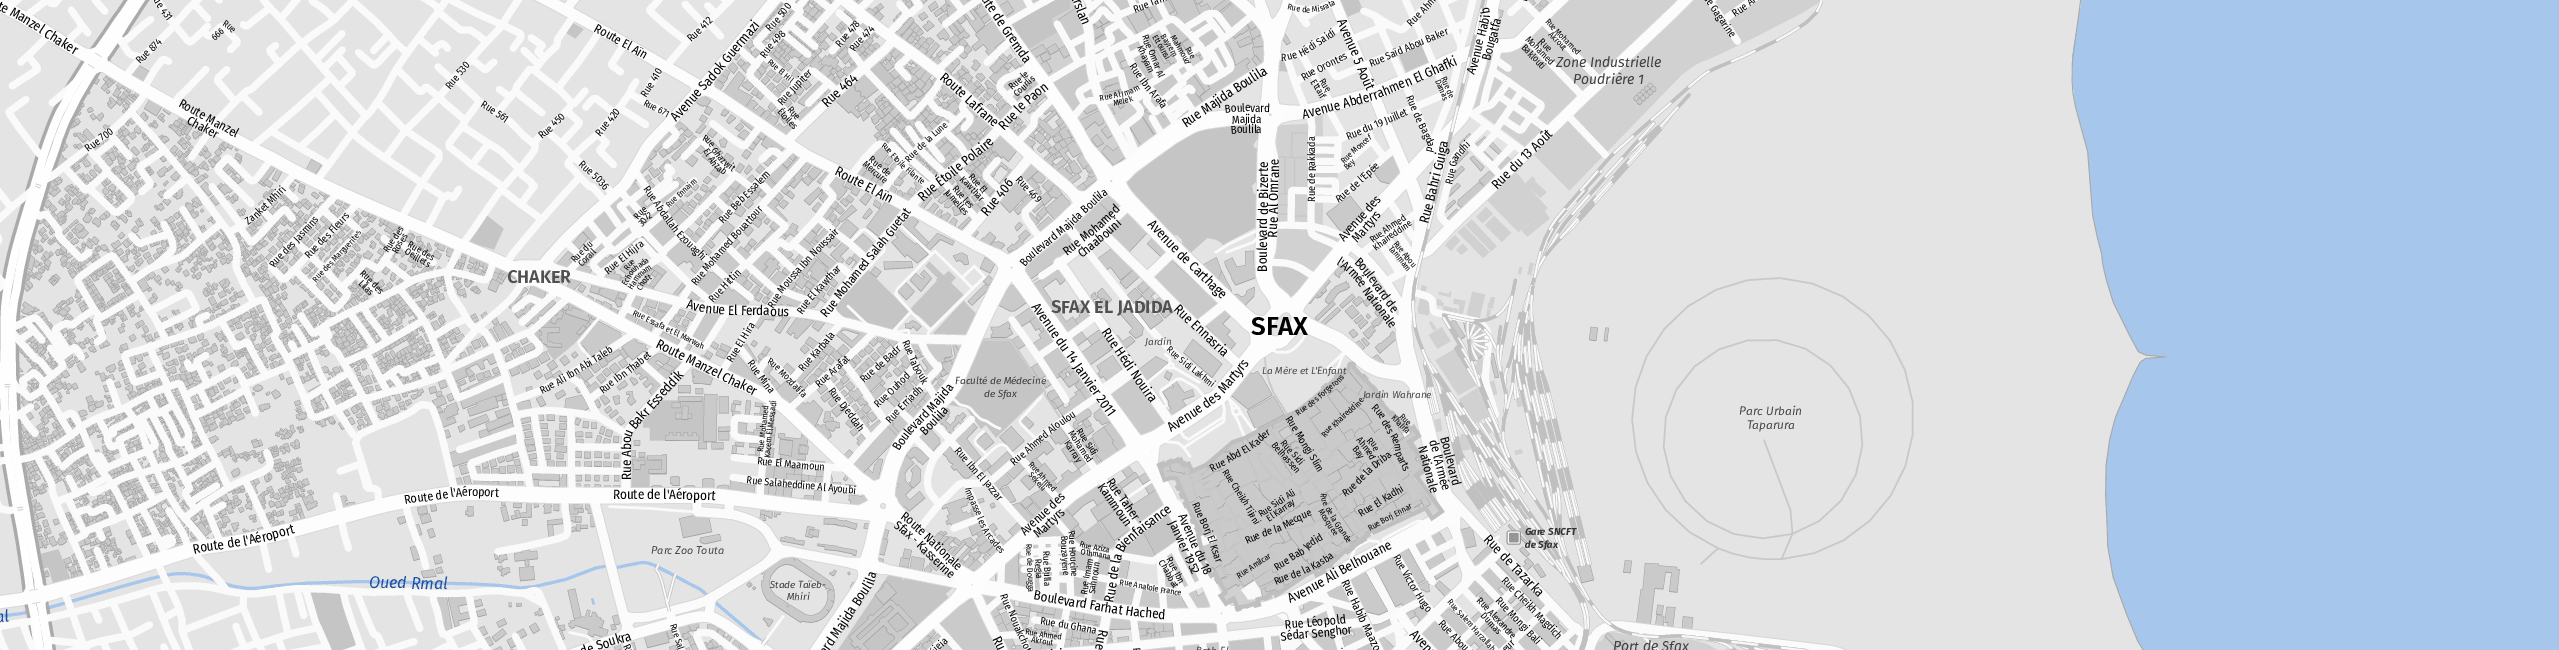 Stadtplan Sfax zum Downloaden.